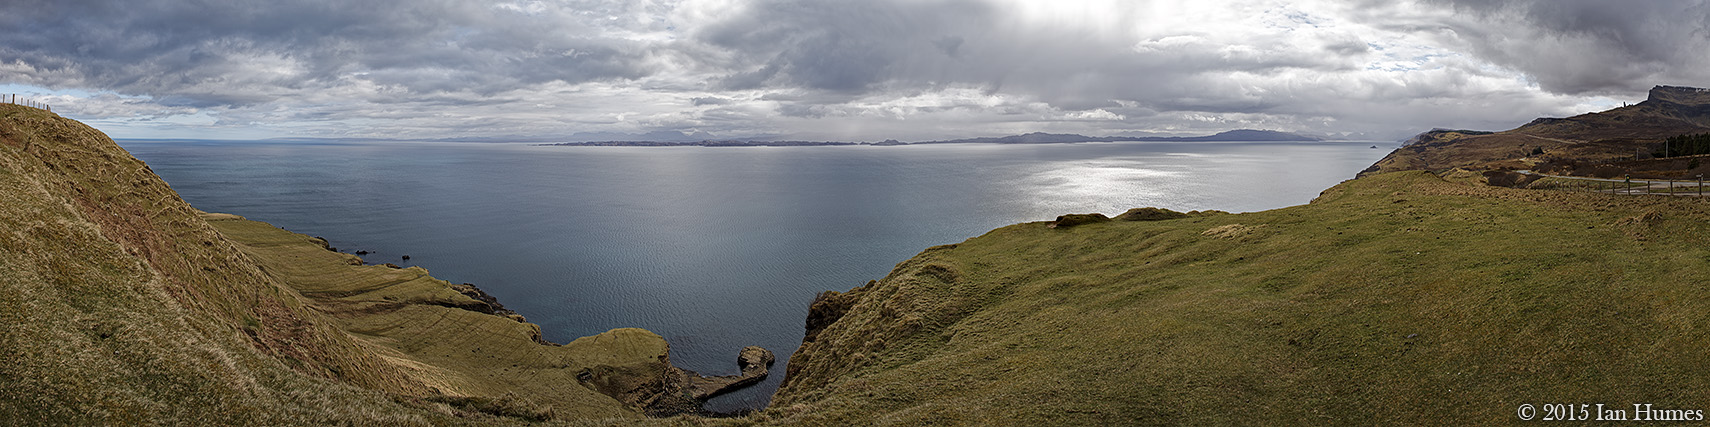 Sound of Raasay - Isle of Skye